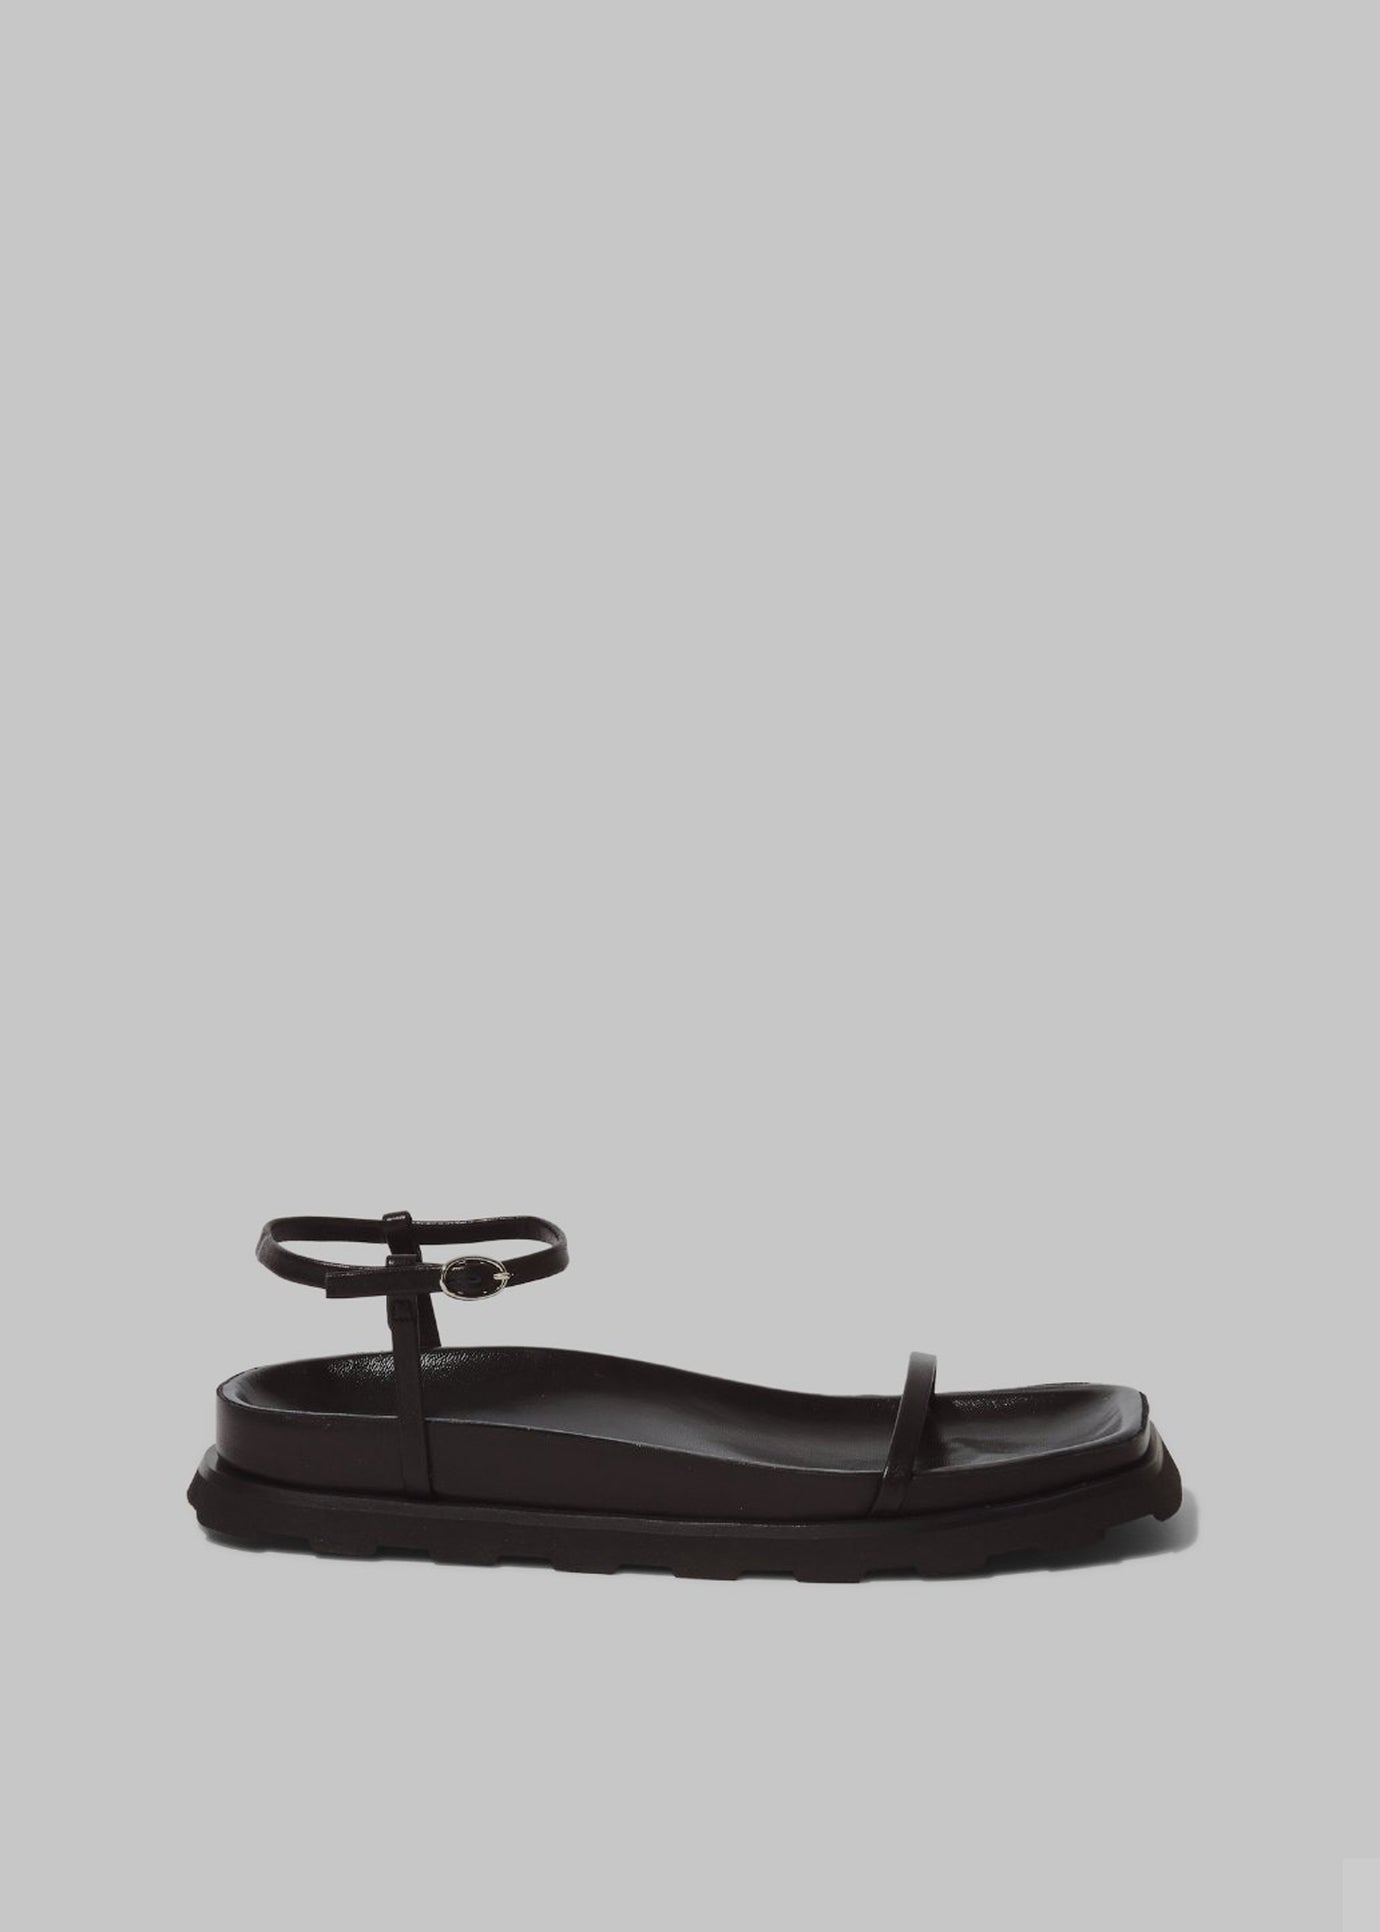 Proenza Schouler Forma Sandals - Black